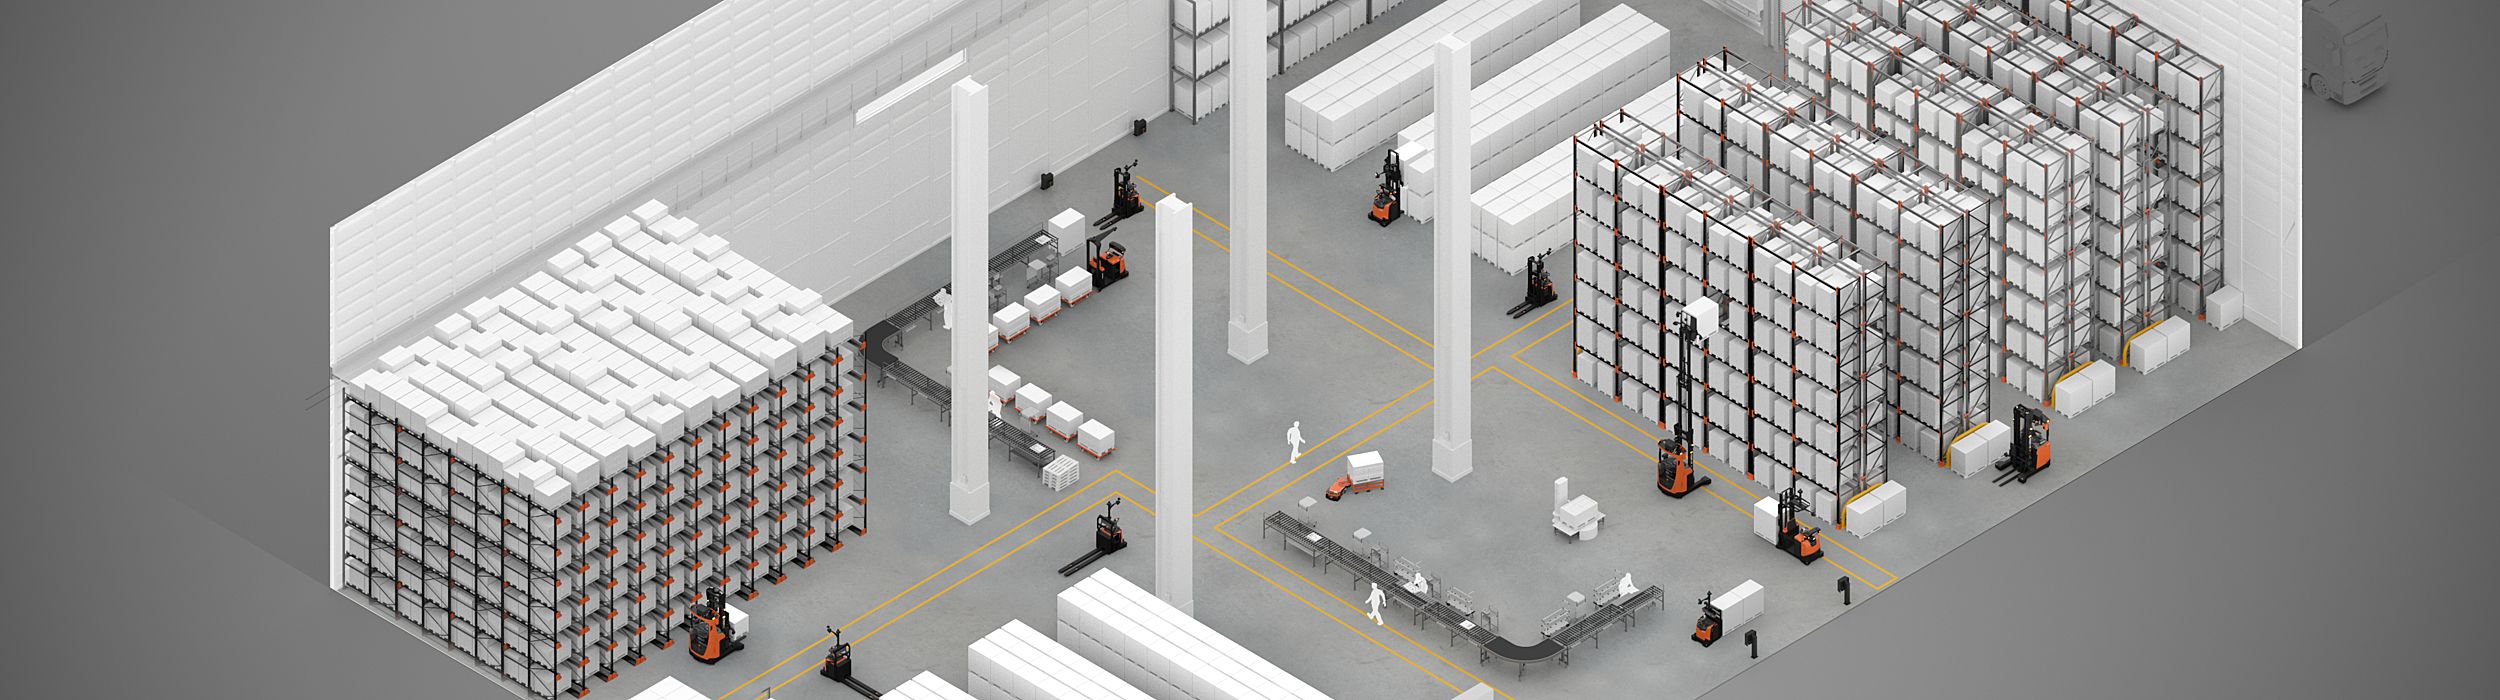 Simulación del diseño de un almacén con carretillas